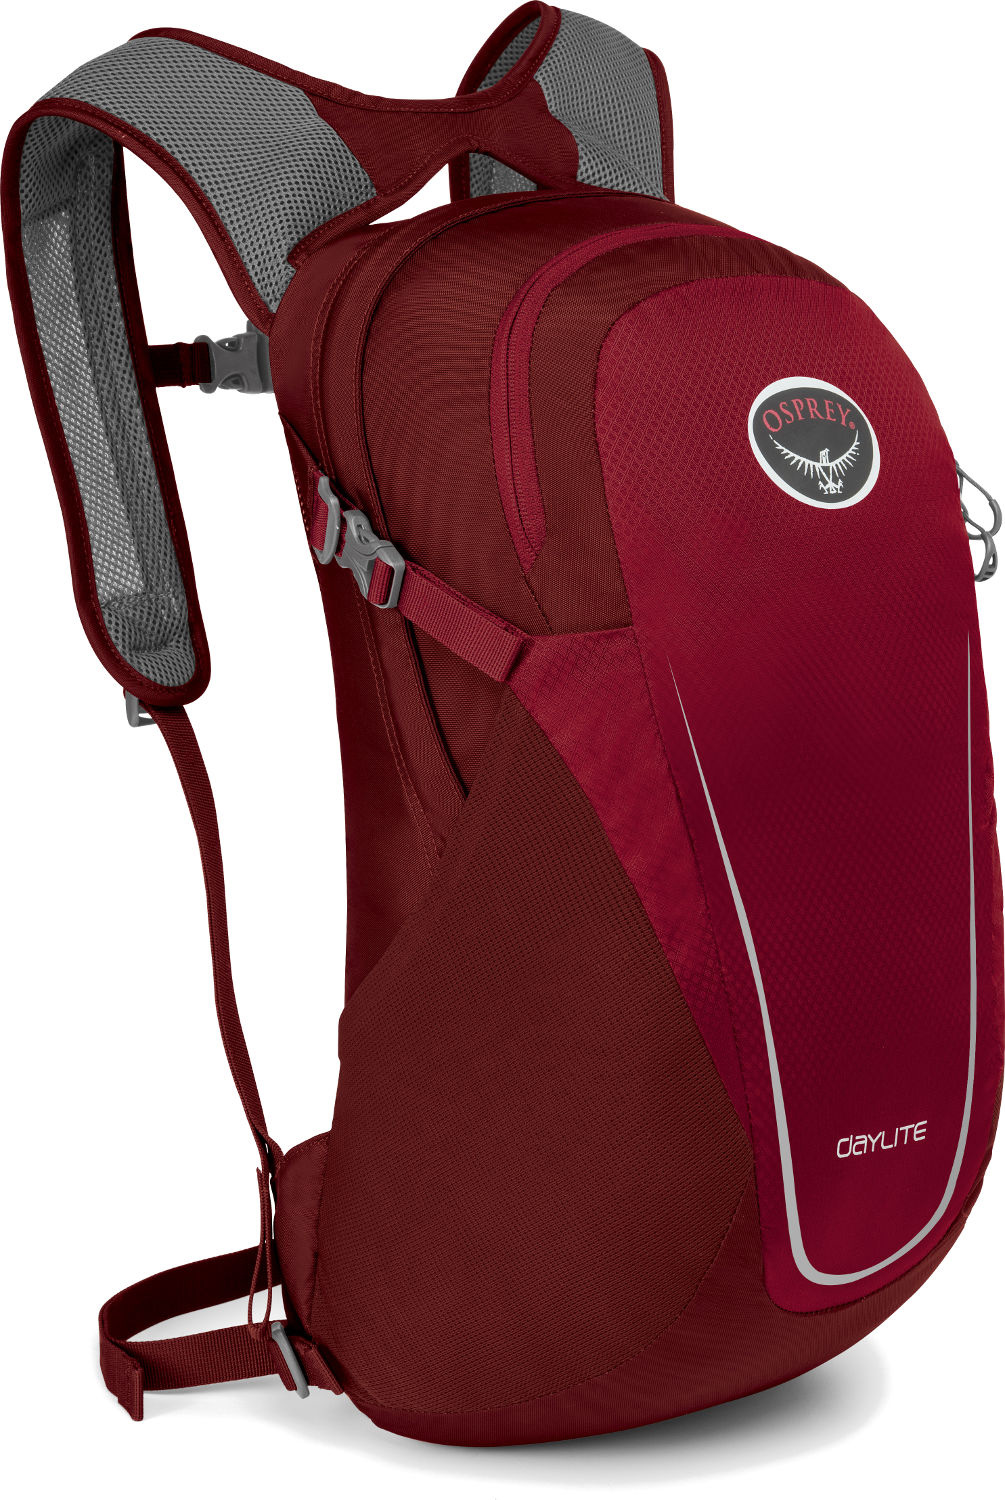 Нейлоновый туристический рюкзак Osprey Daylite 13 (2020) Real Red